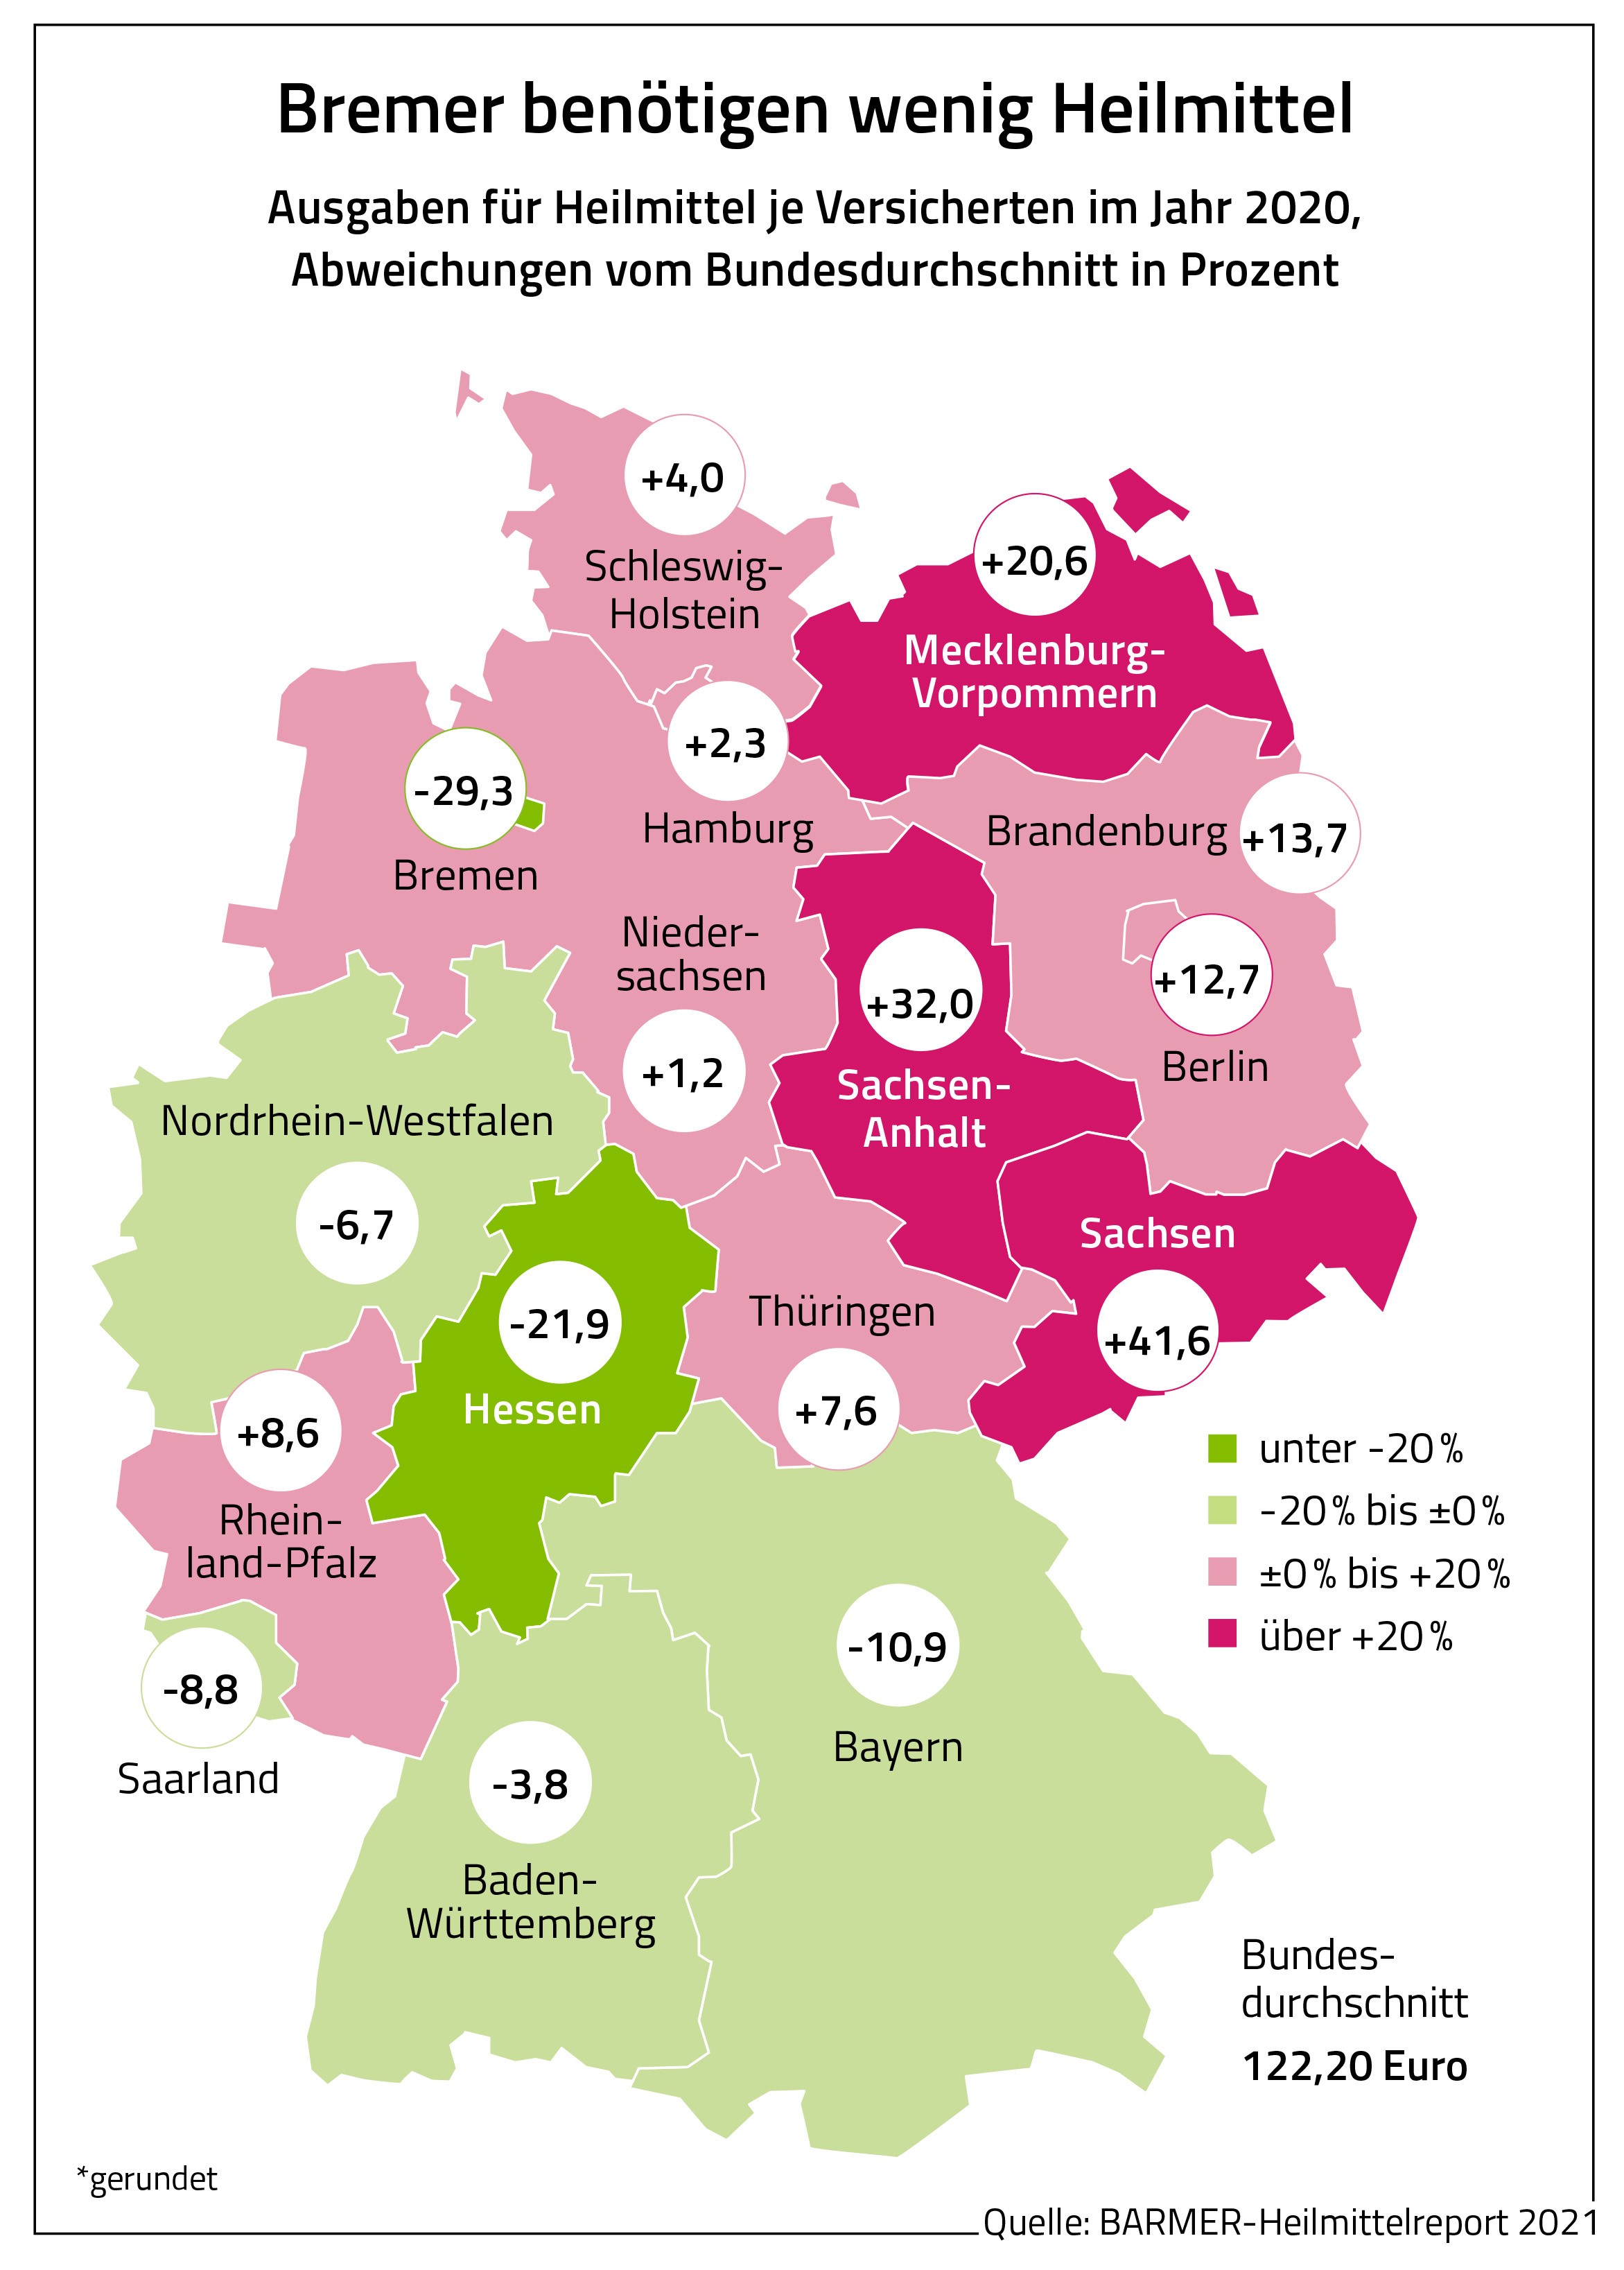 Deutschlandkarte mit den Ausgaben der Bundesländer für Heilmittel im Jahr 2020